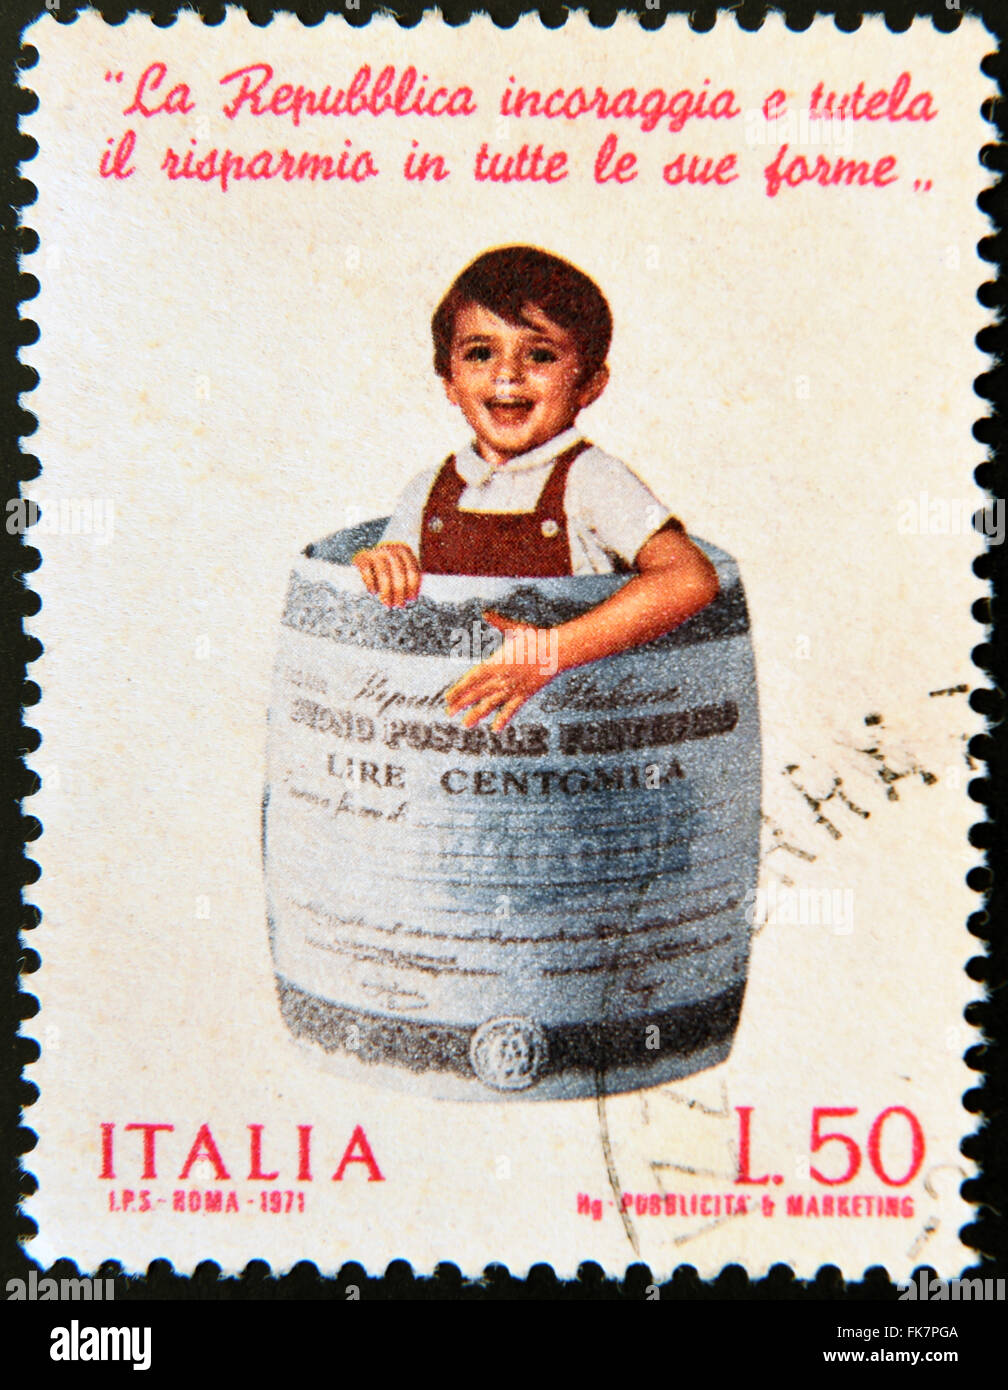 Italia - circa 1971: un timbro stampato in Italia mostra bambino in canna fatta di banconota, Postal Savings Bank, circa 1971 Foto Stock